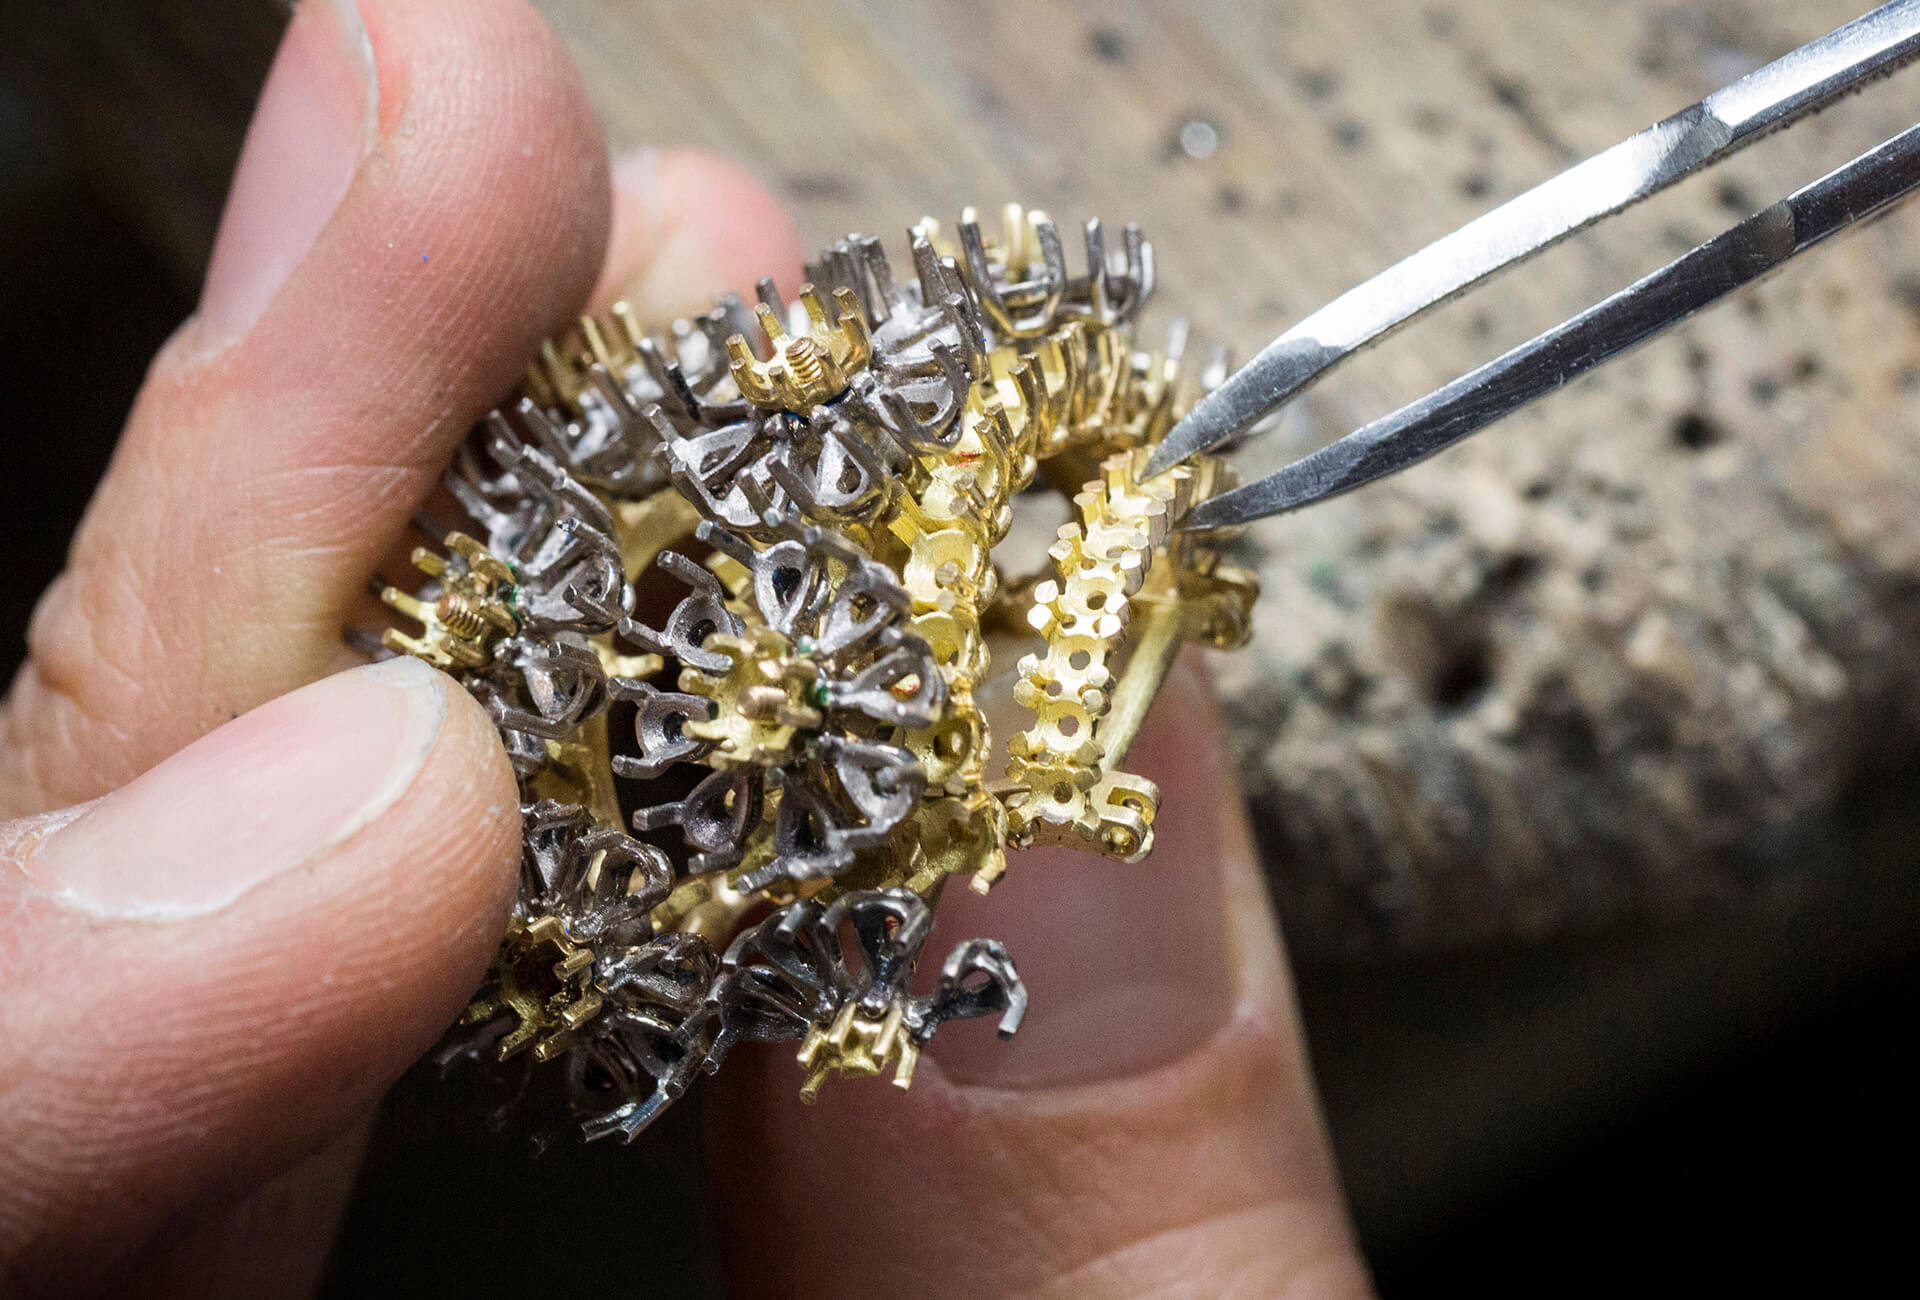 Pâquerette Watch (jewelry work, assembling) © Van Cleef & Arpels